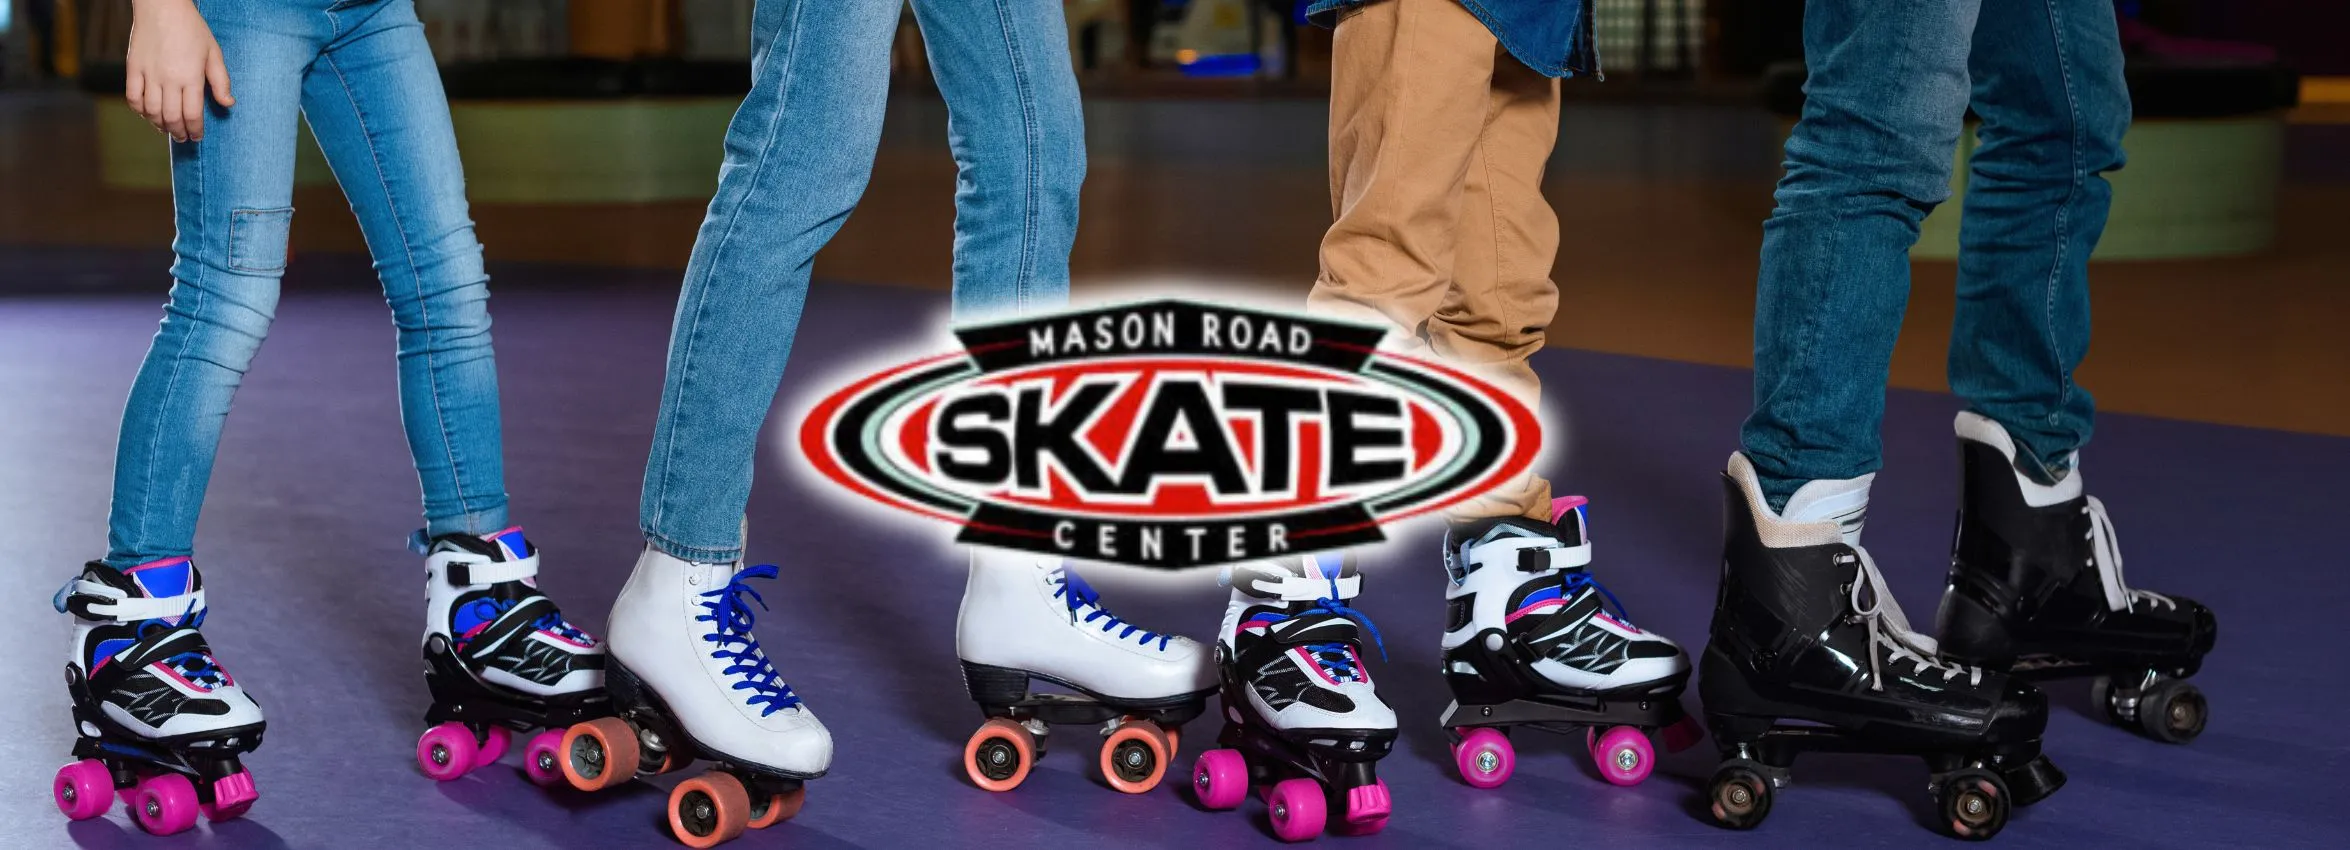 Mason-Road-Skate-Center_Desktop_ET